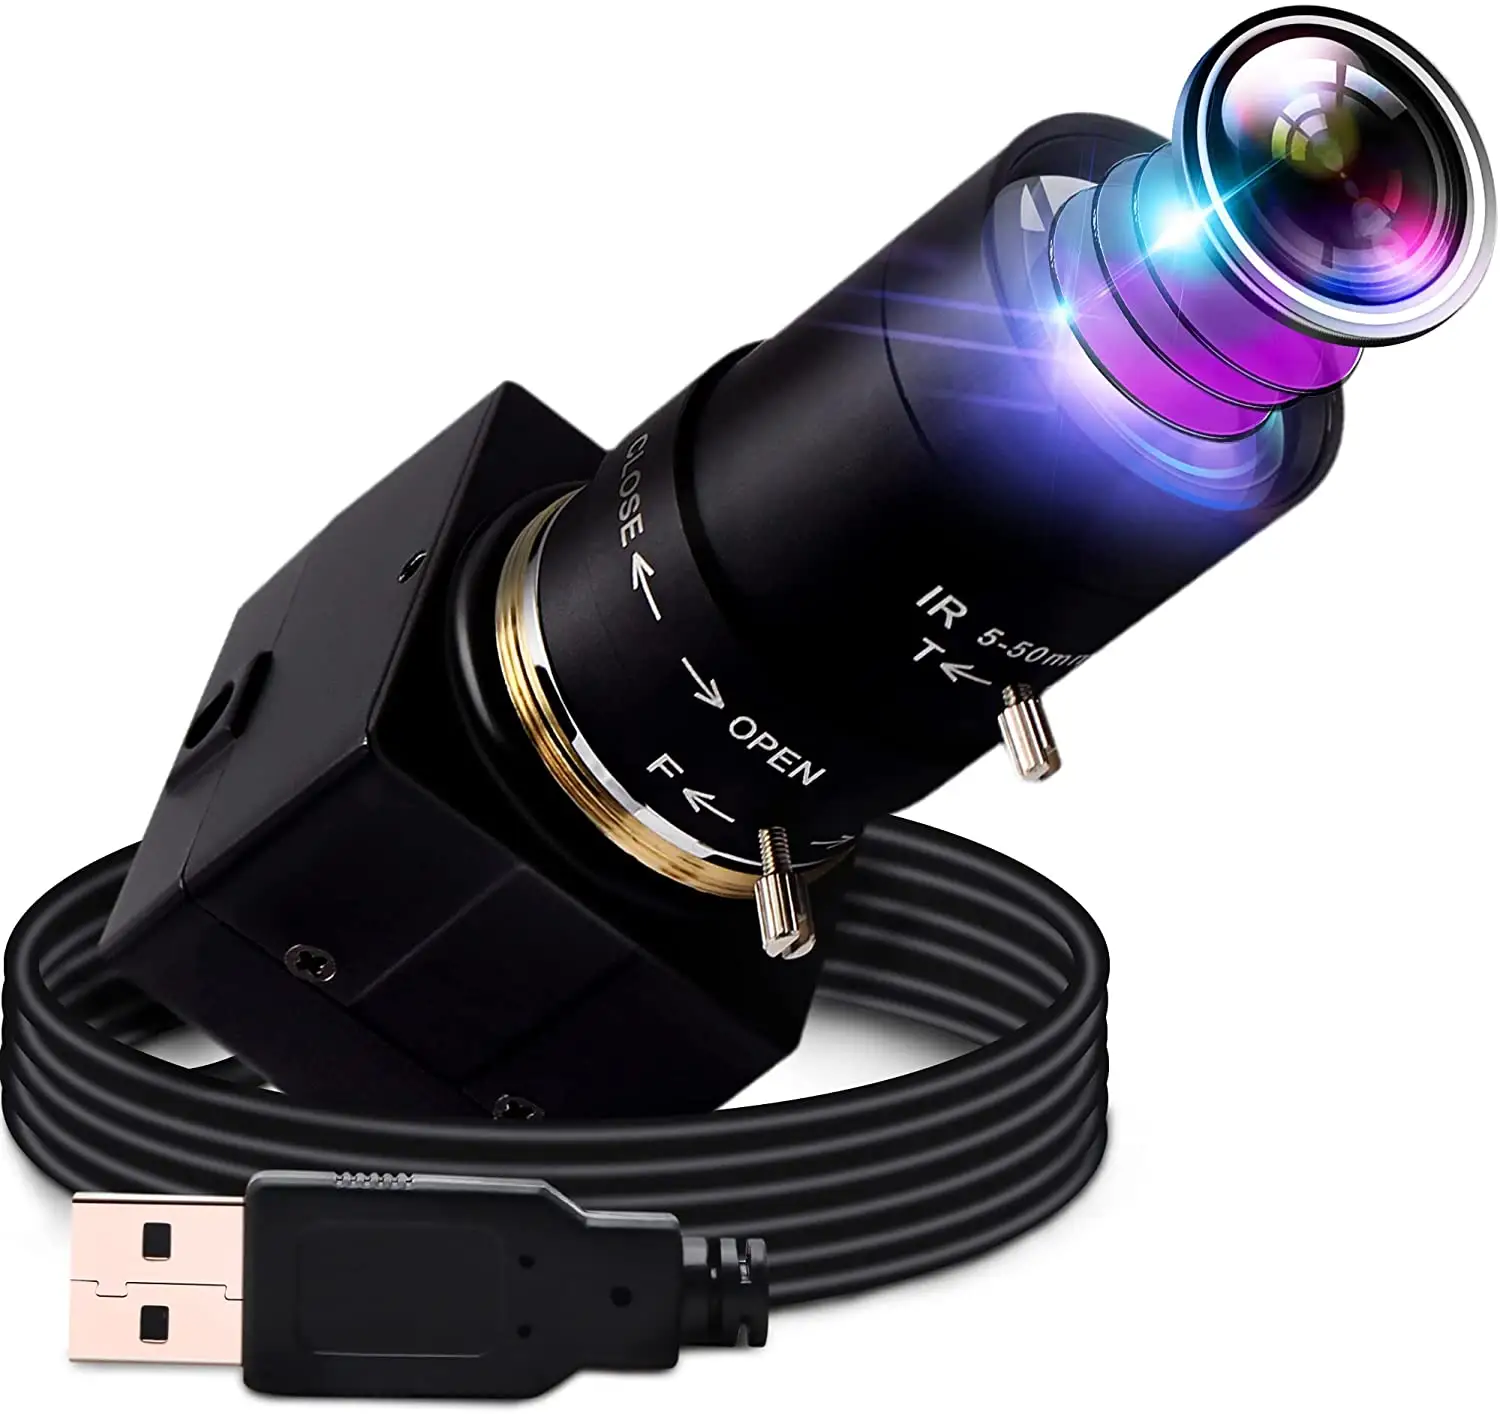 Elp câmera de segurança usb full hd 1080p, iluminação baixa h.264, com lente de zoom varifocal de 2.8-12mm para videogames